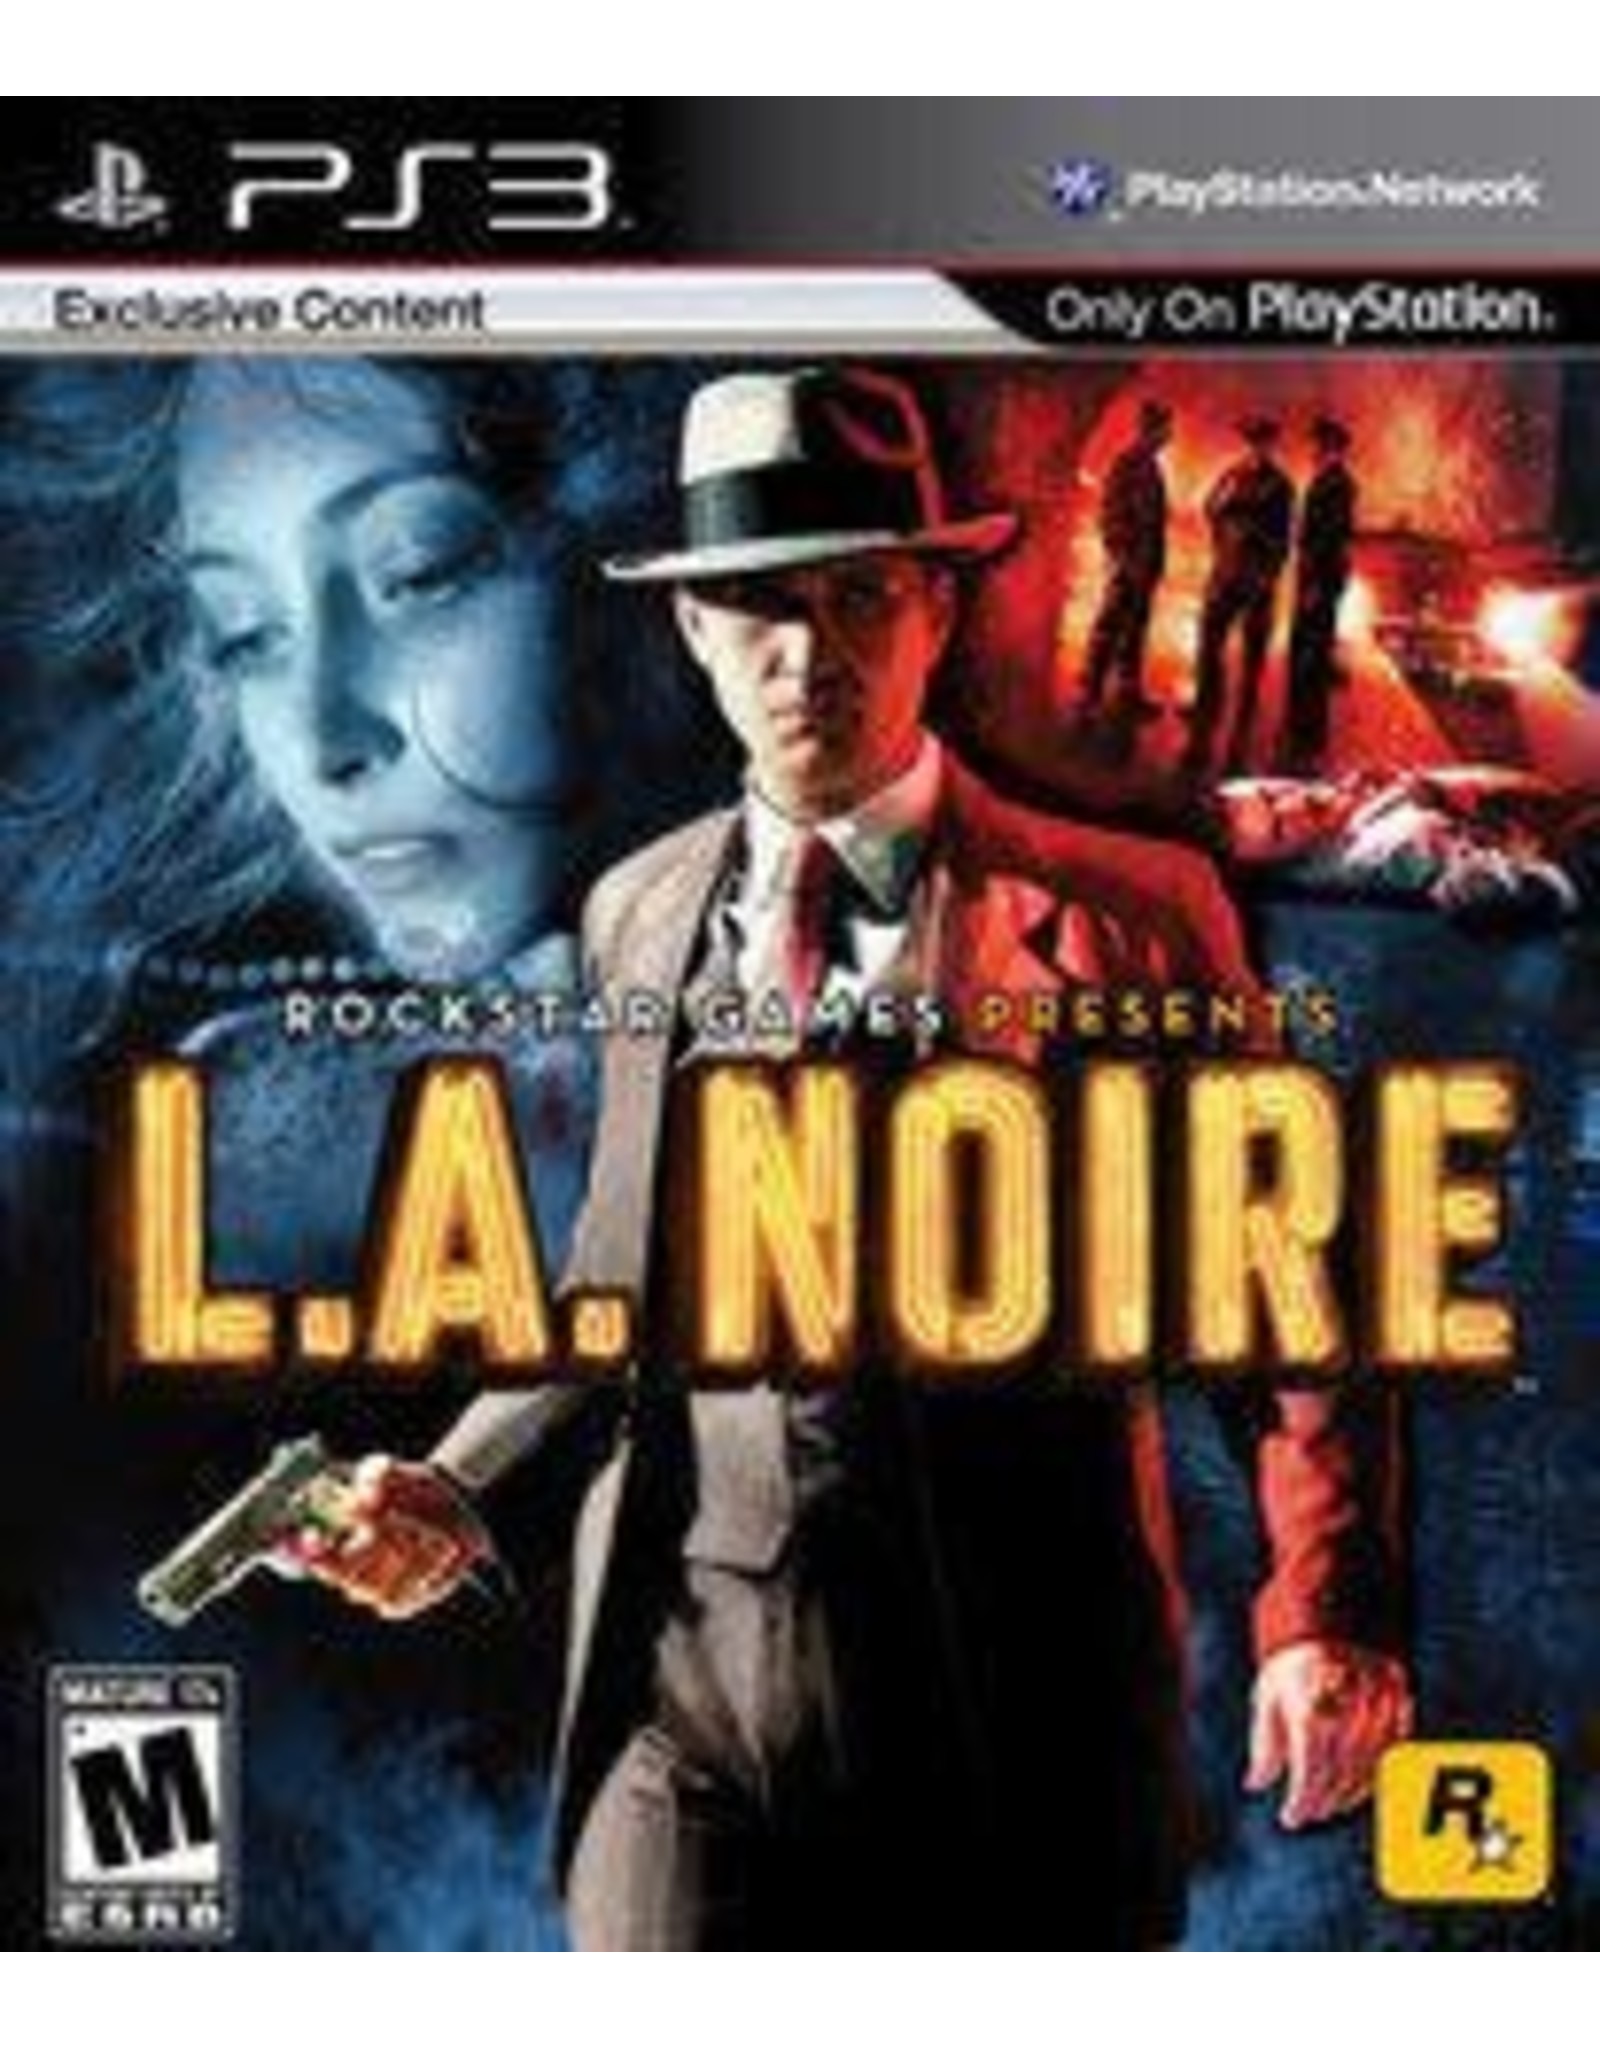 Playstation 3 L.A. Noire (CiB)